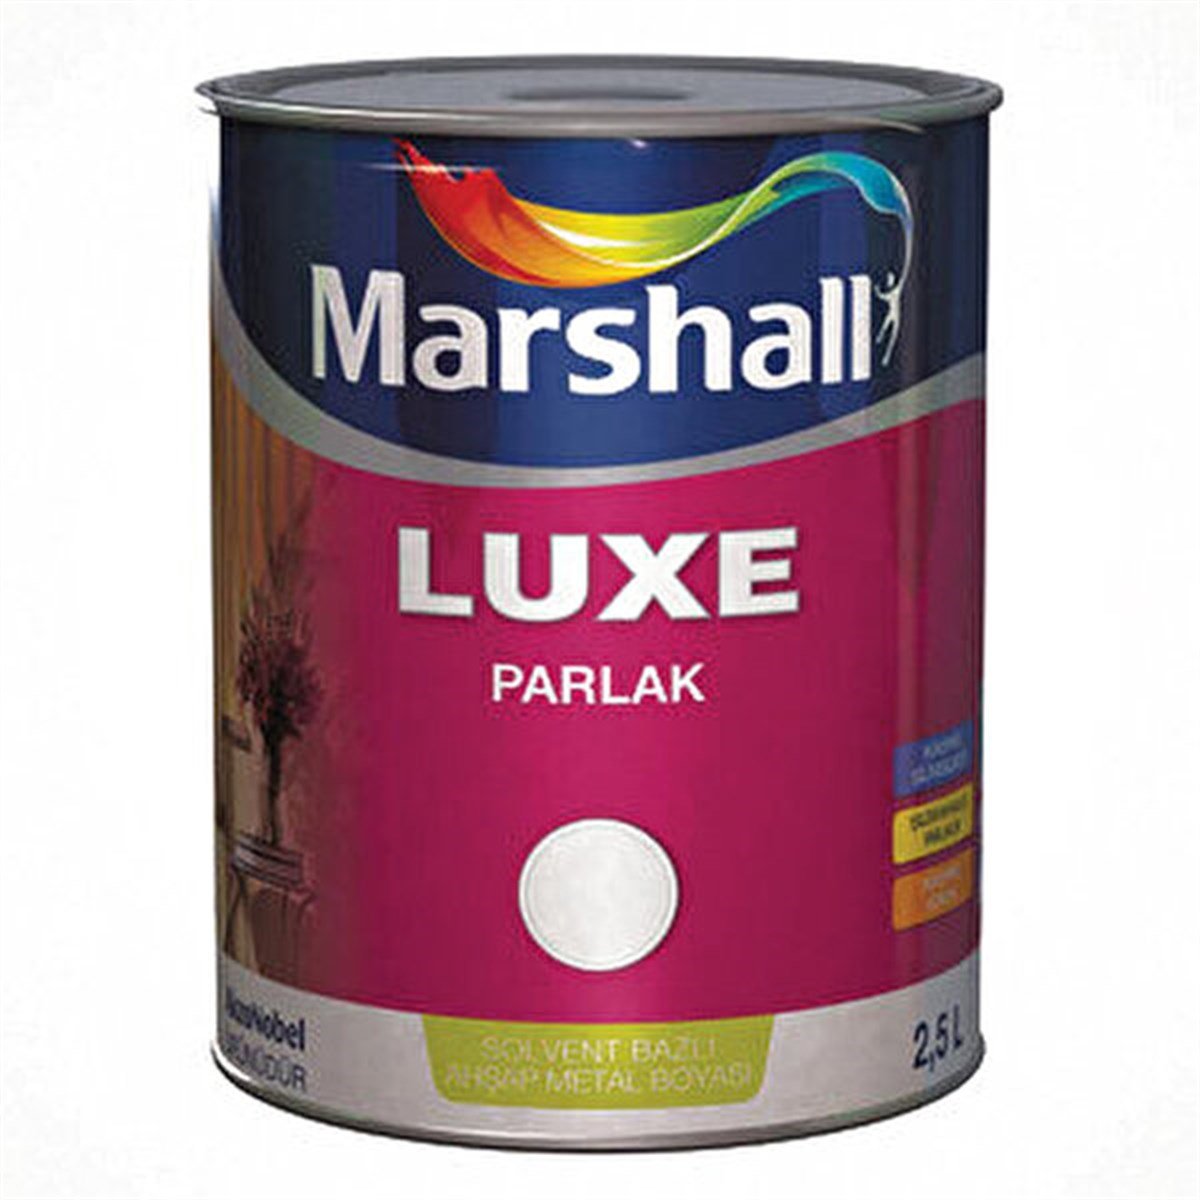 Marshall Luxe - Parlak Sentetik Yağlı Boya | Nalburun